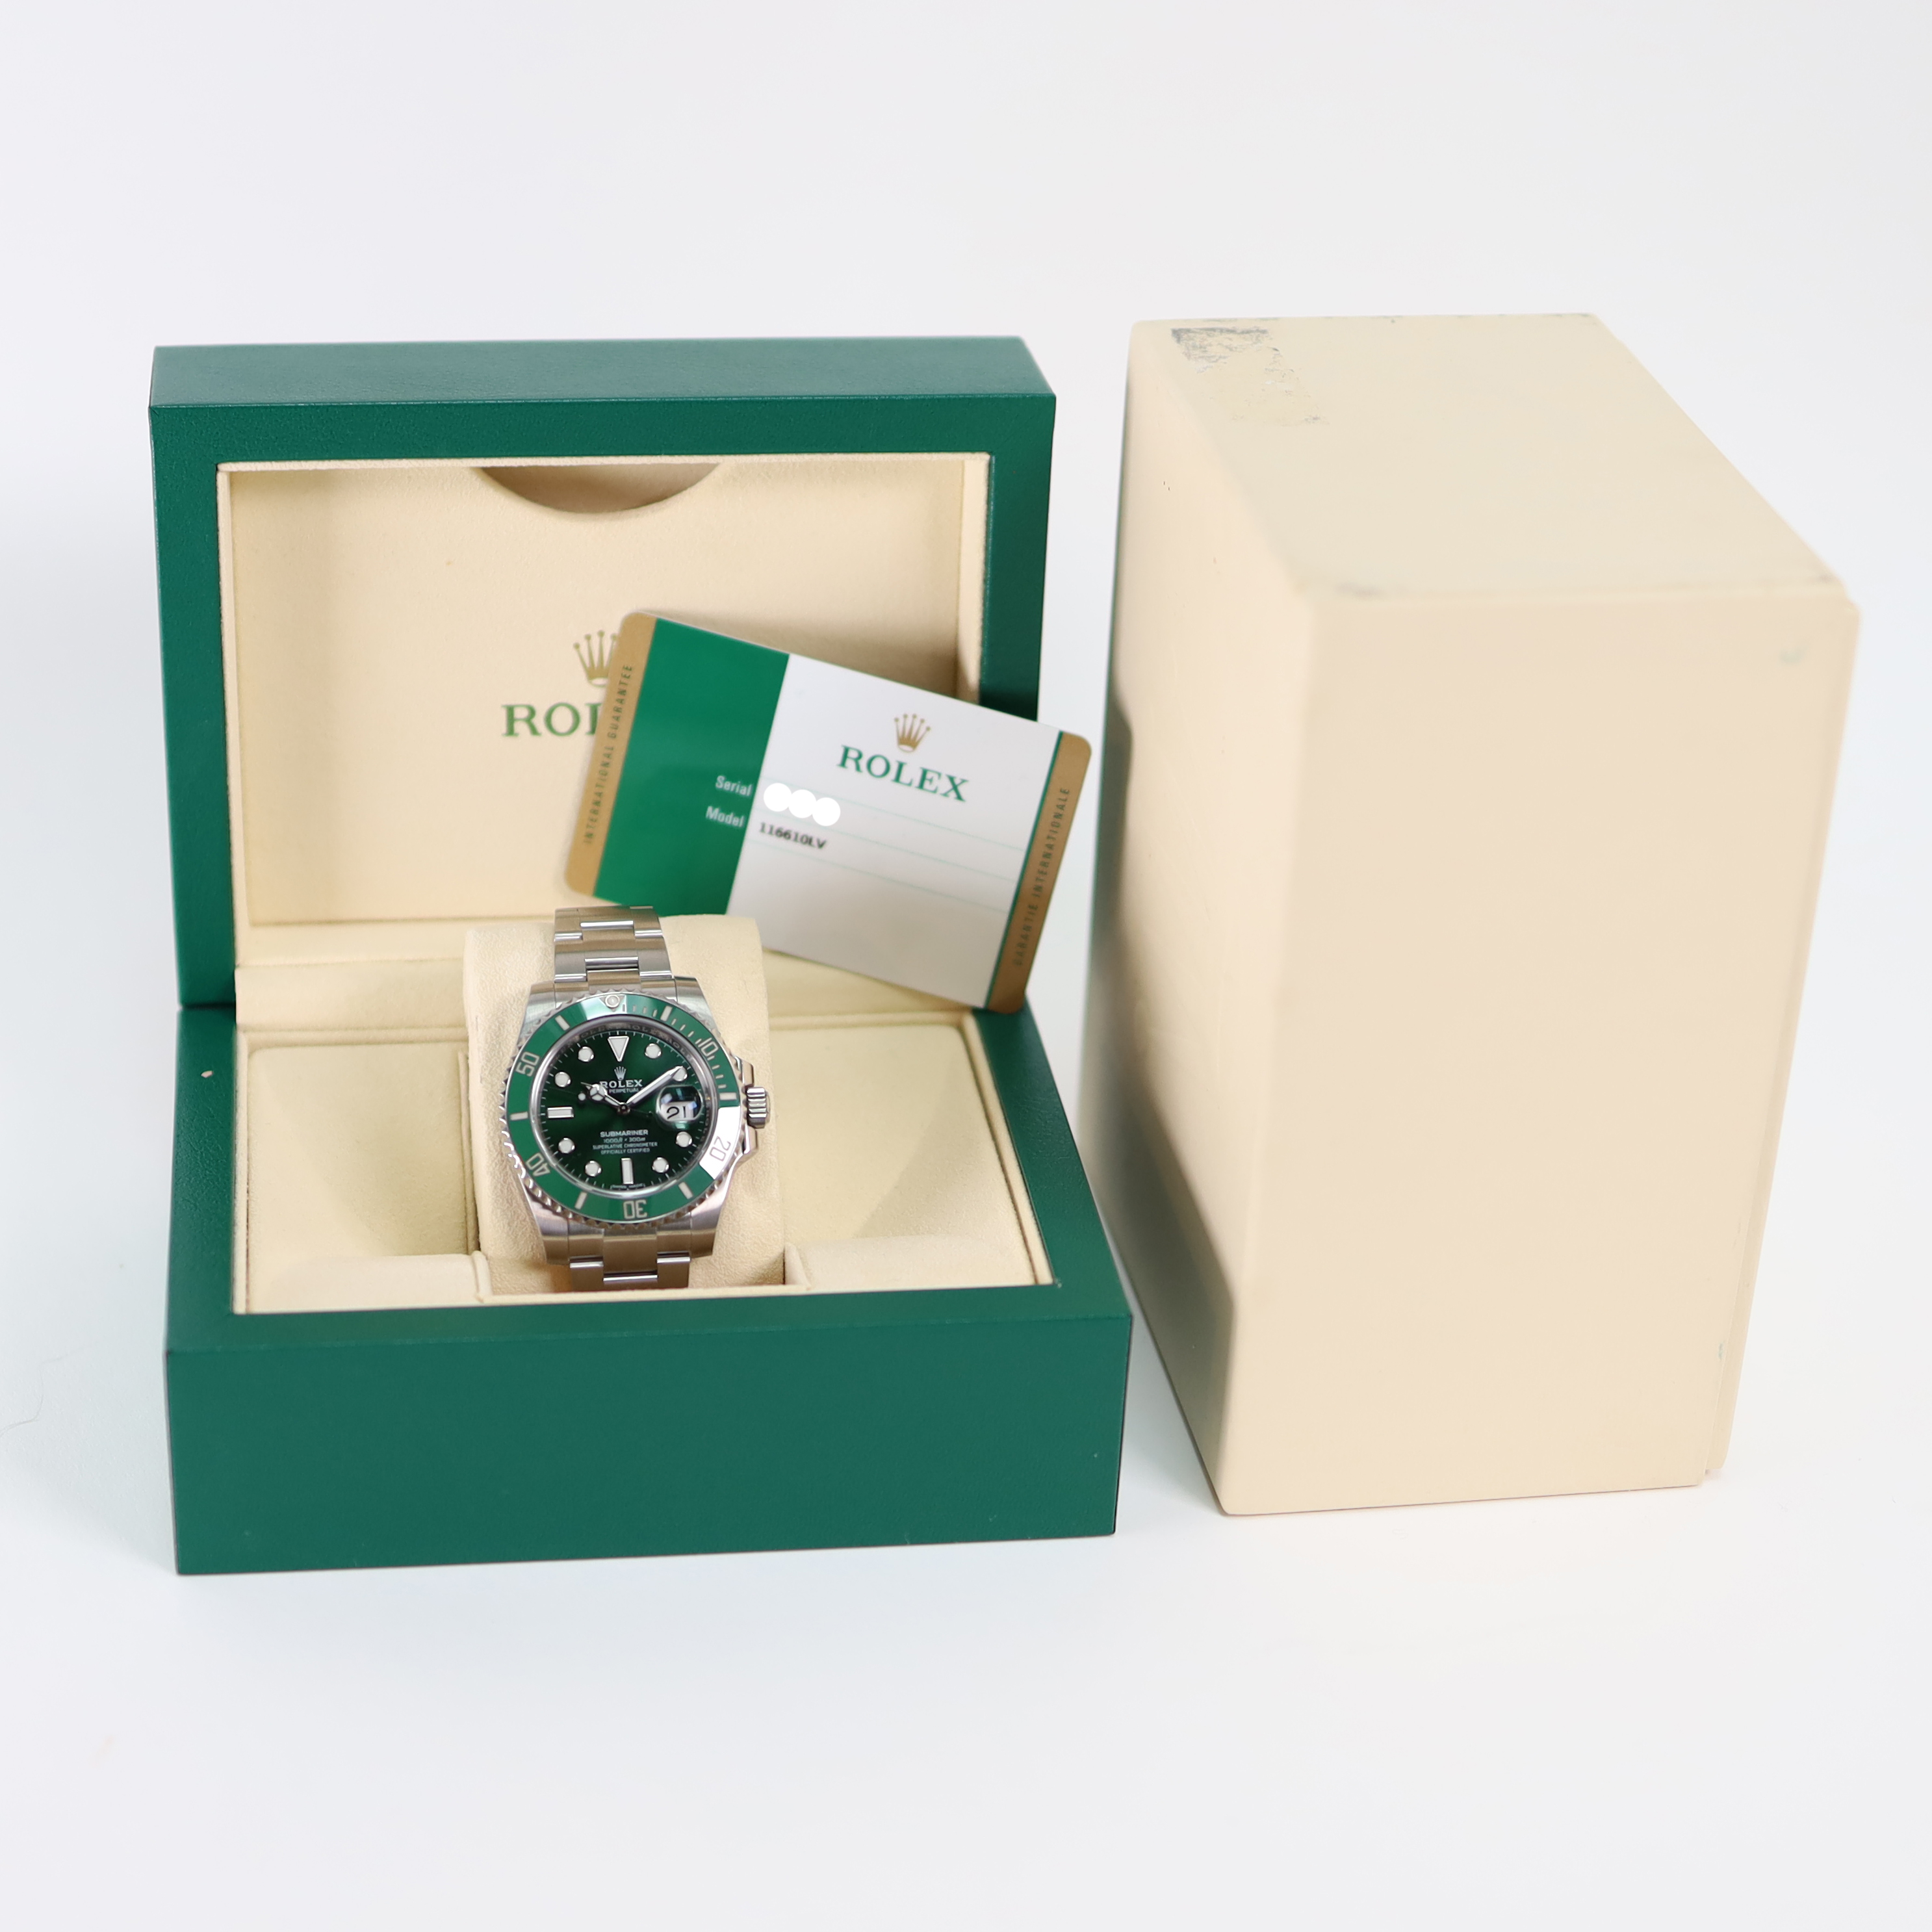 Submariner Date 116610 LV - Rolex - Sold watches - Juwelier Burger